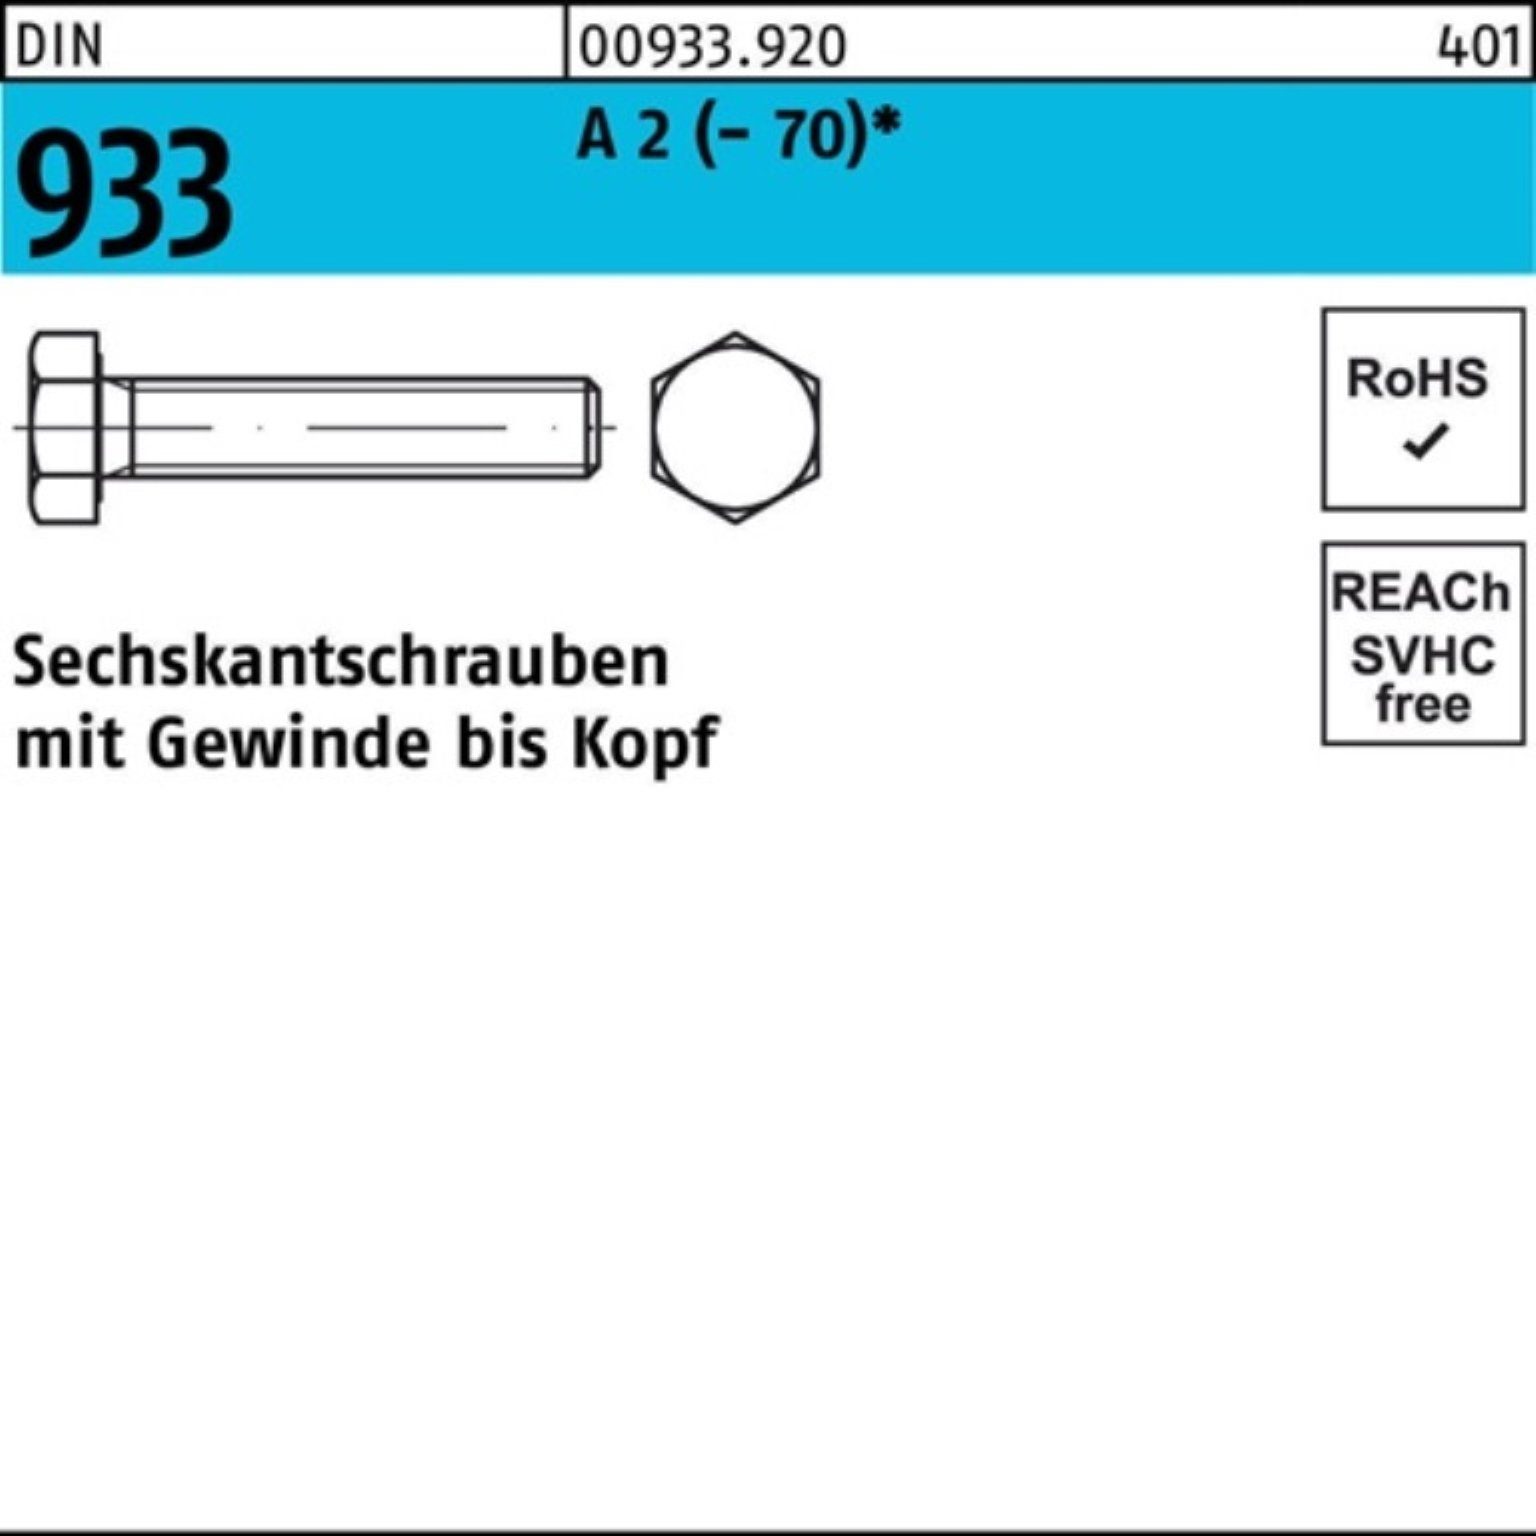 Reyher Sechskantschraube 25 (70) 933 130 Sechskantschraube Stück DIN VG M14x Pack 100er 2 A